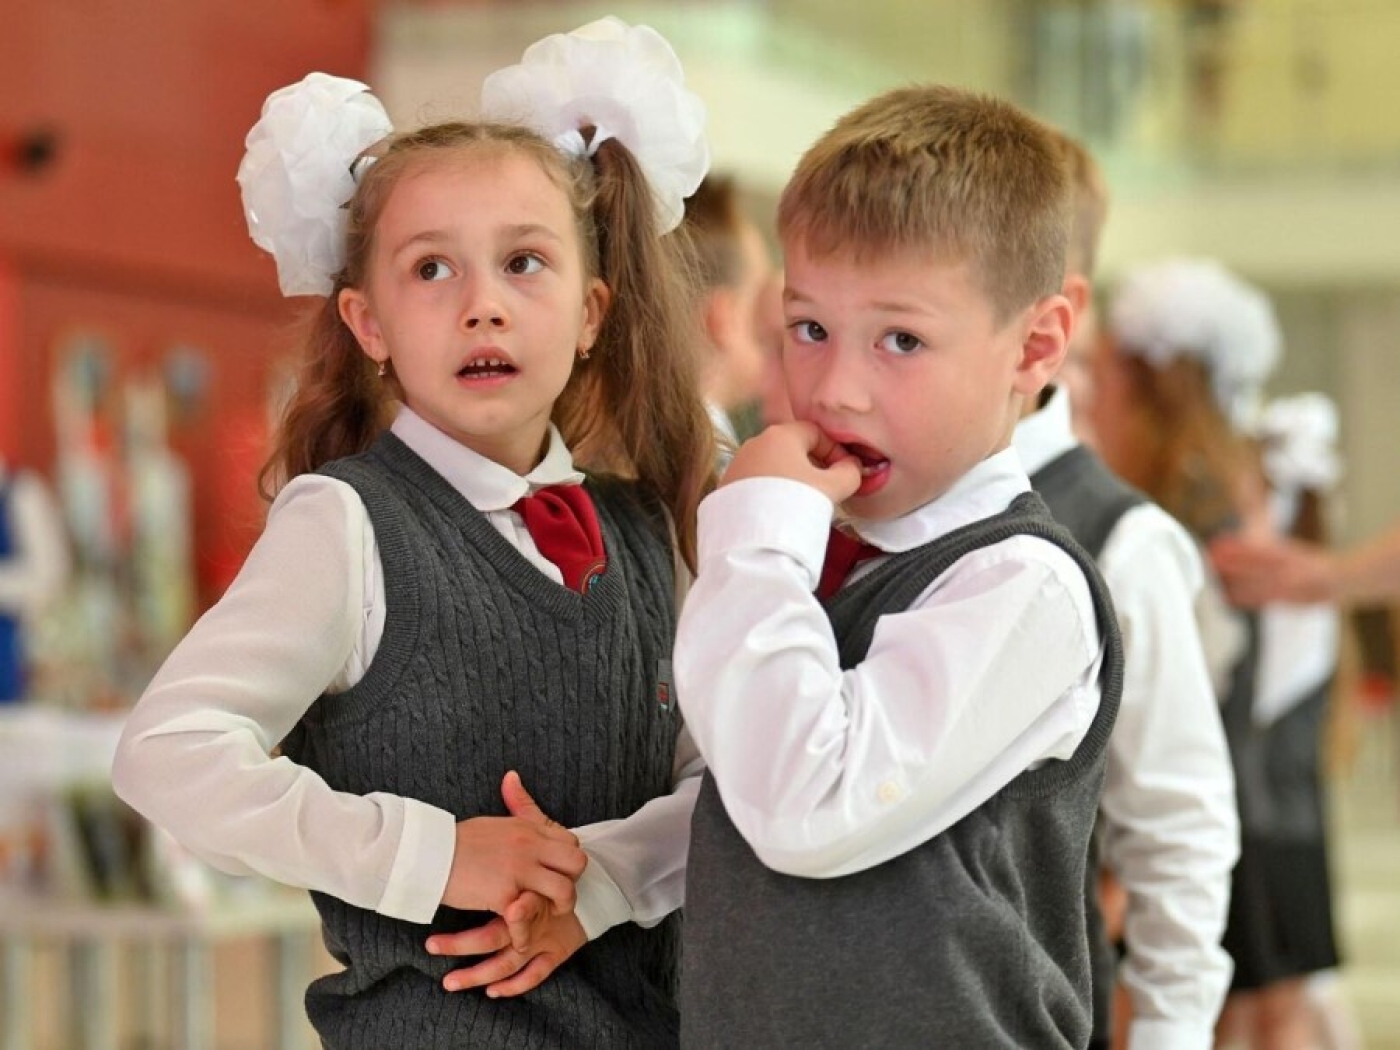 Информация о раздельном обучении мальчиков и девочек в Беларуси - фейк